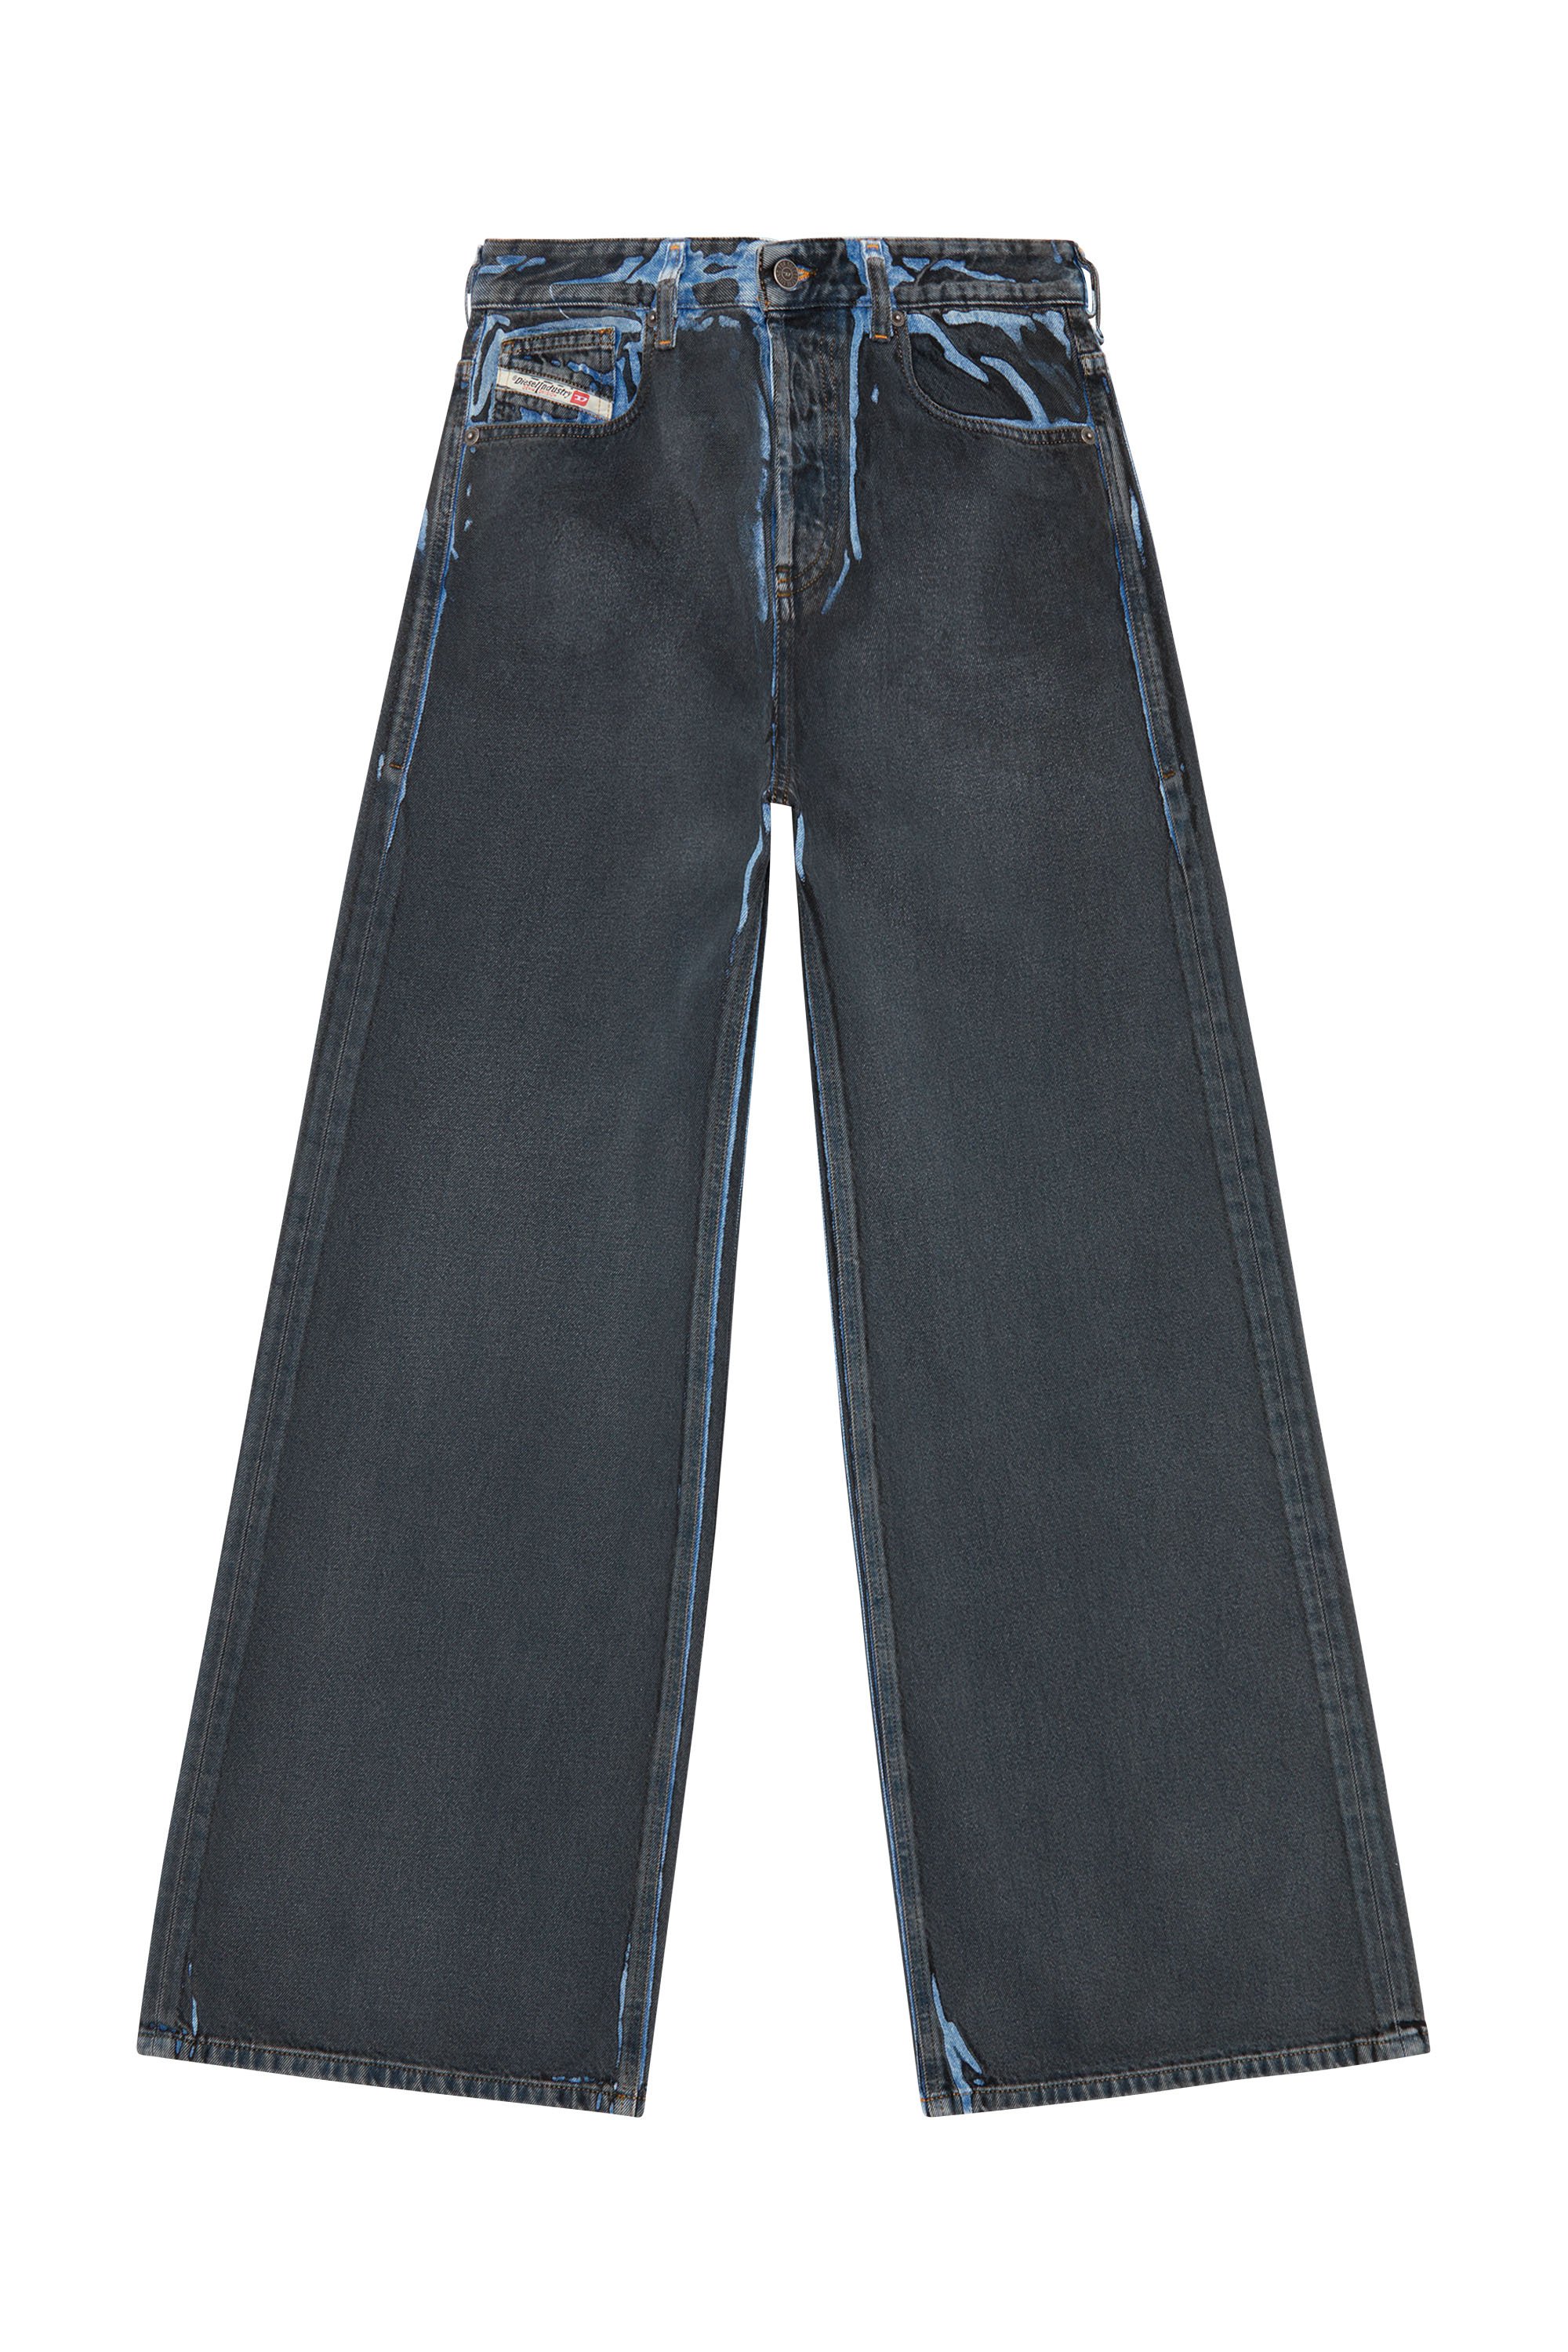 Diesel - Femme Straight Jeans 1996 D-Sire 09I47, Noir/Gris foncé - Image 5